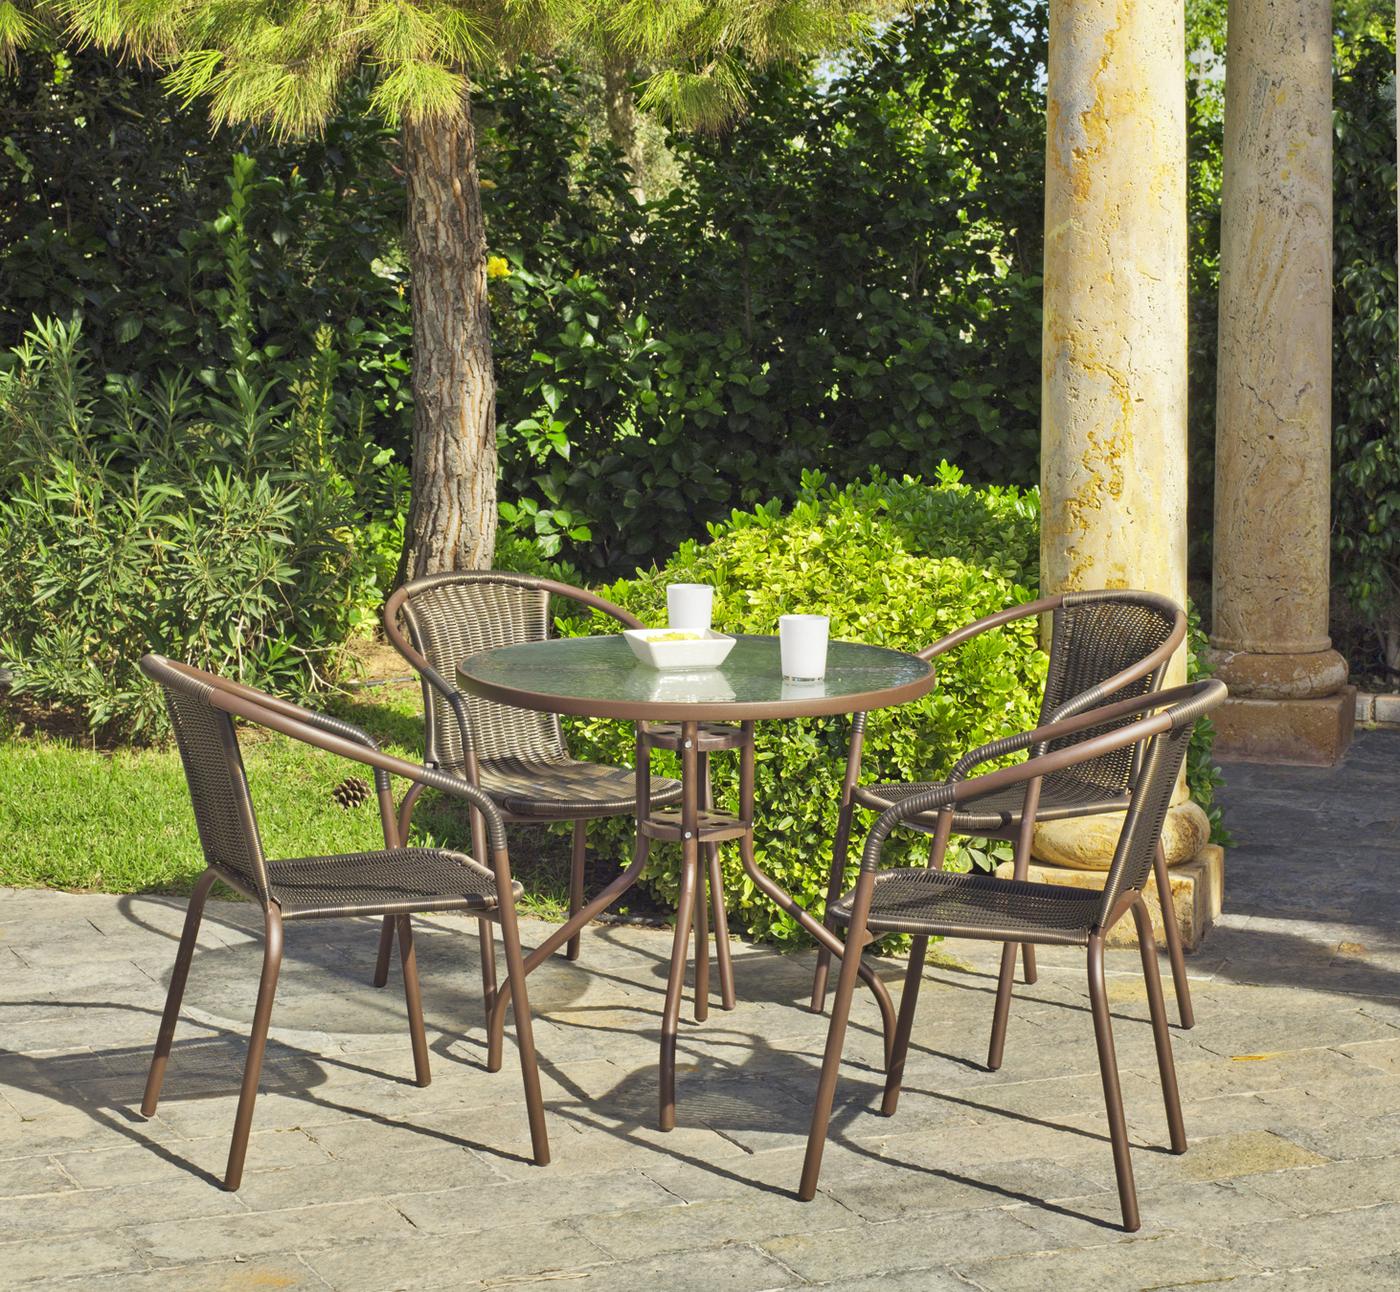 Conjunto de acero color bronce: mesa redonda de 90 cm. Con tapa de cristal templado y 4 sillones apilables de wicker reforzado